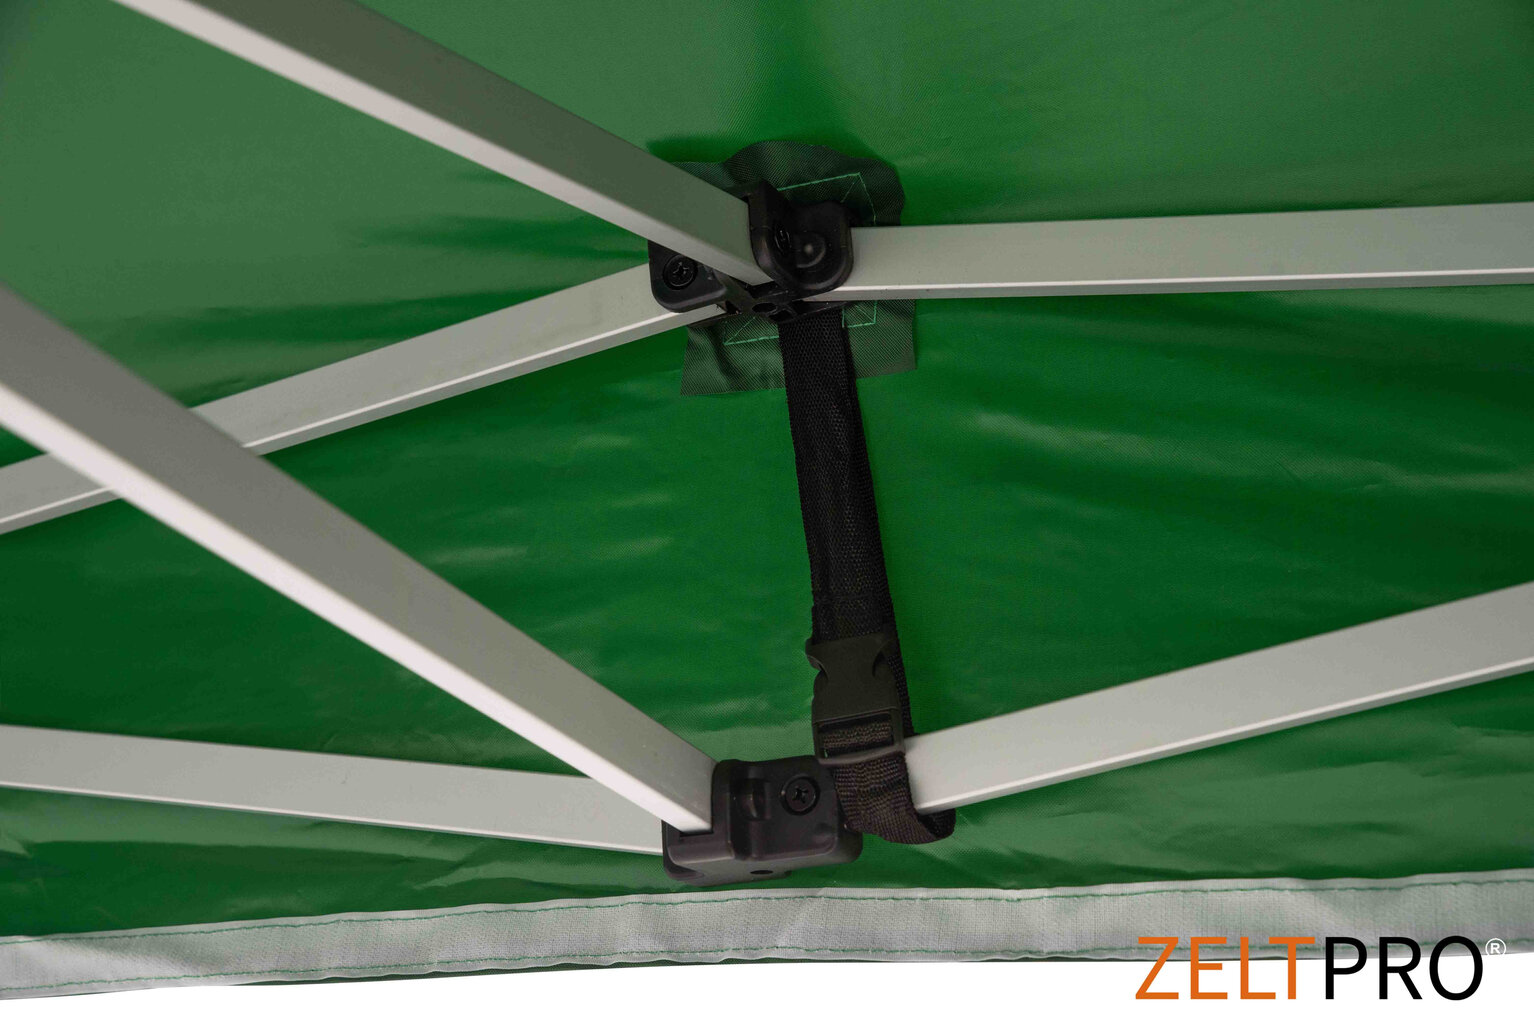 Pop-up telk 3x3 roheline Zeltpro TITAAN цена и информация | Telgid | kaup24.ee